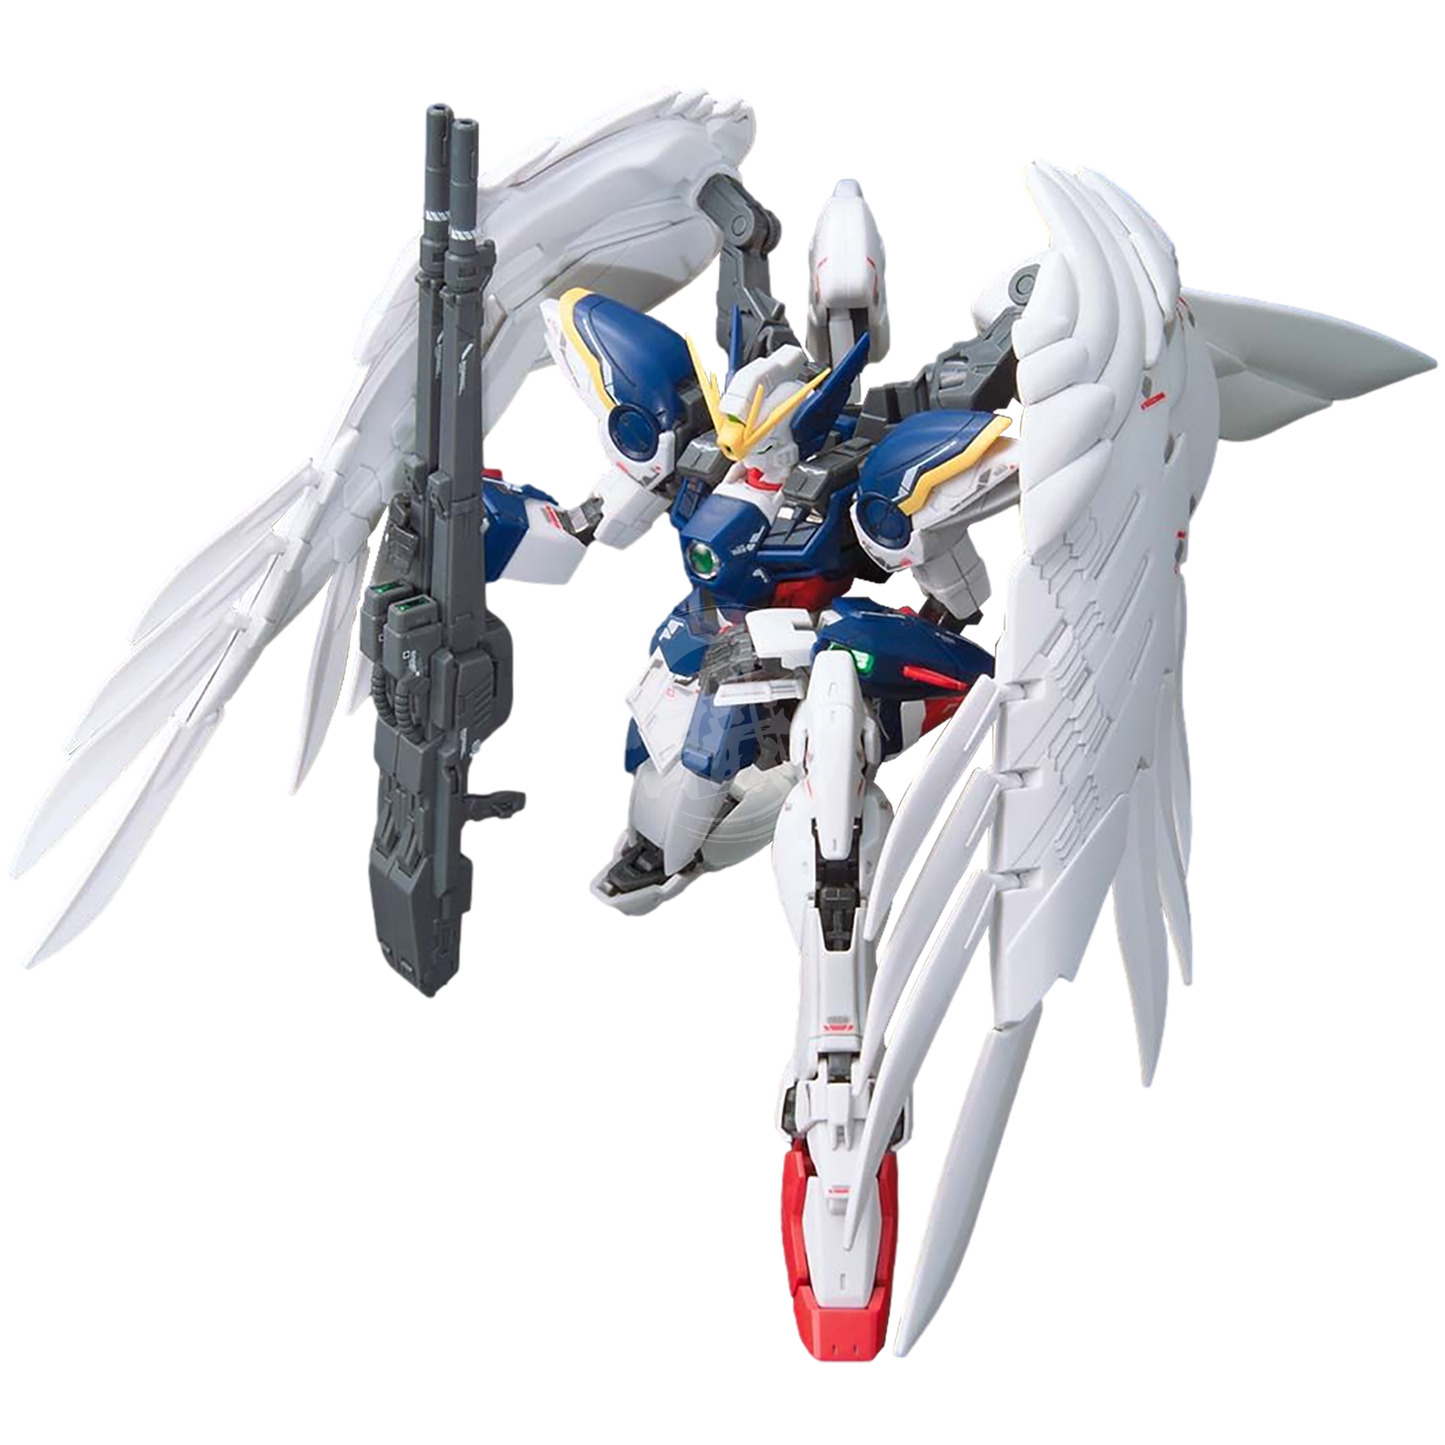 RG Wing Gundam Zero EW - ShokuninGunpla